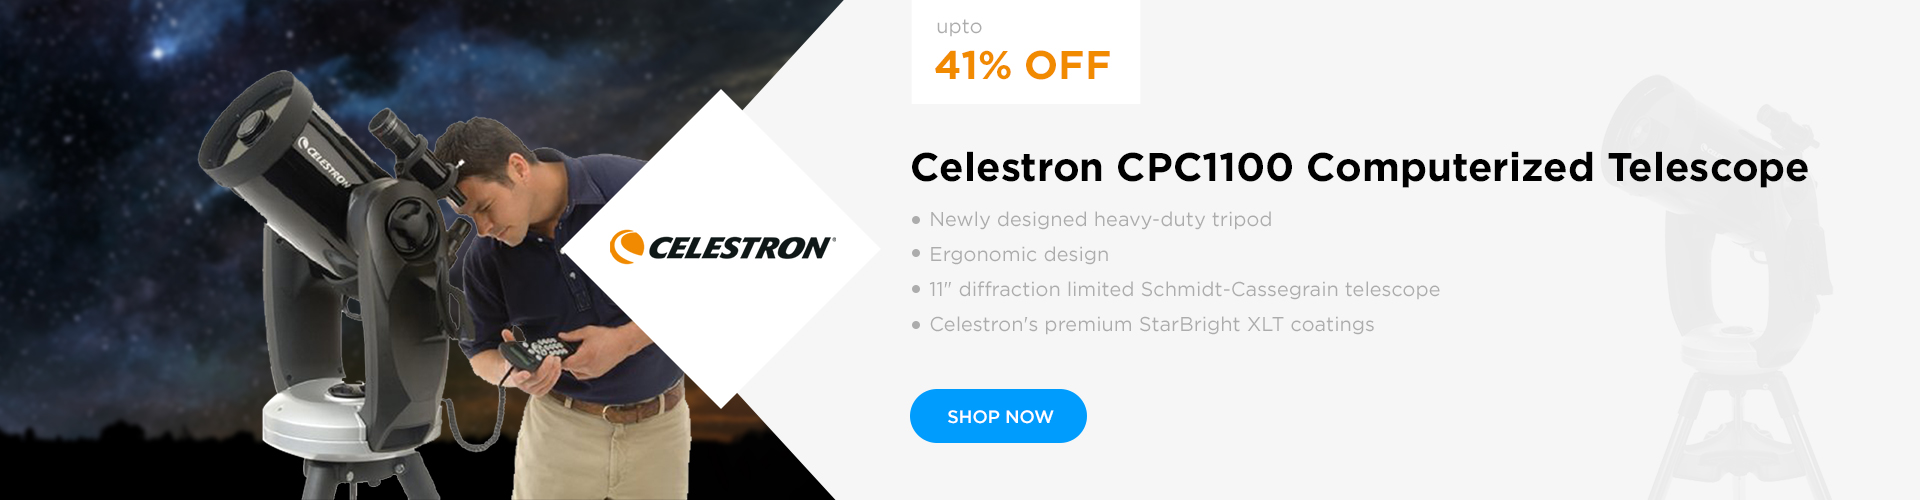 Celestron CPC1100 Computerized Telescope